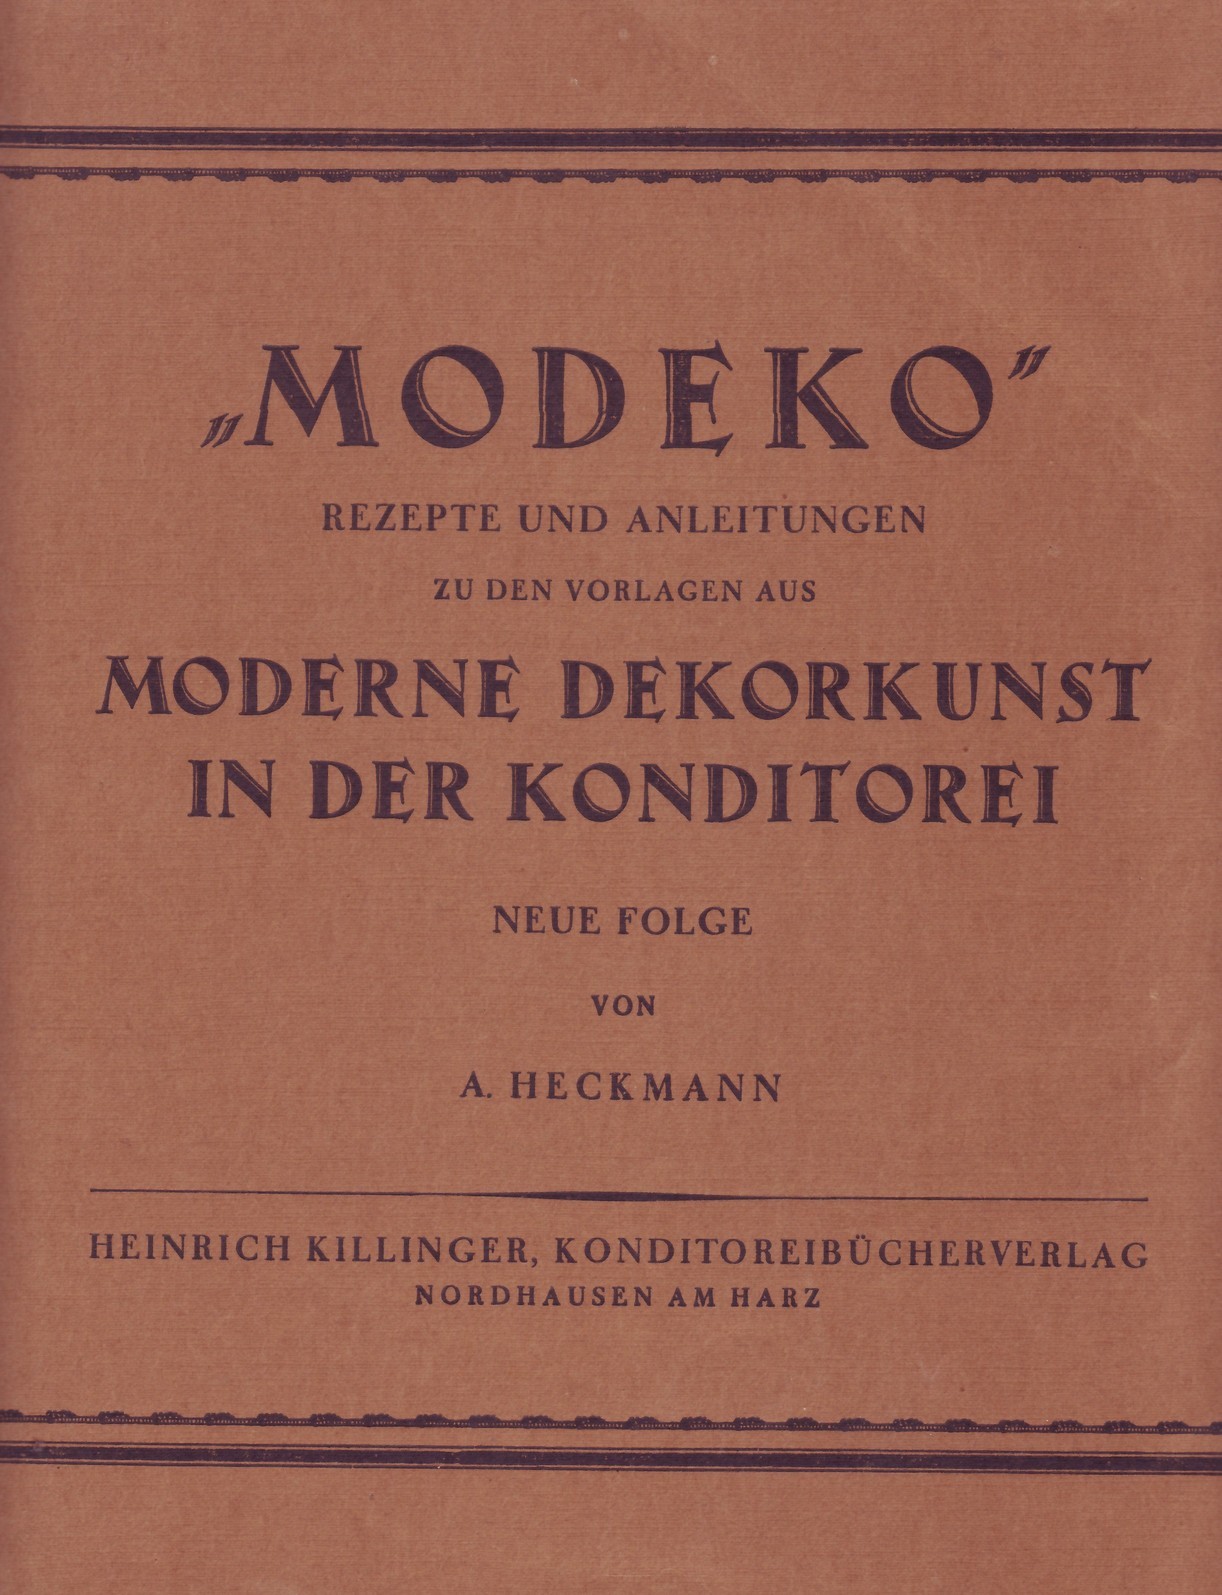 "Modeko" Moderne Dekorkunst in der Konditorei 1925 (Kulturverein Guntersblum CC BY-NC-SA)